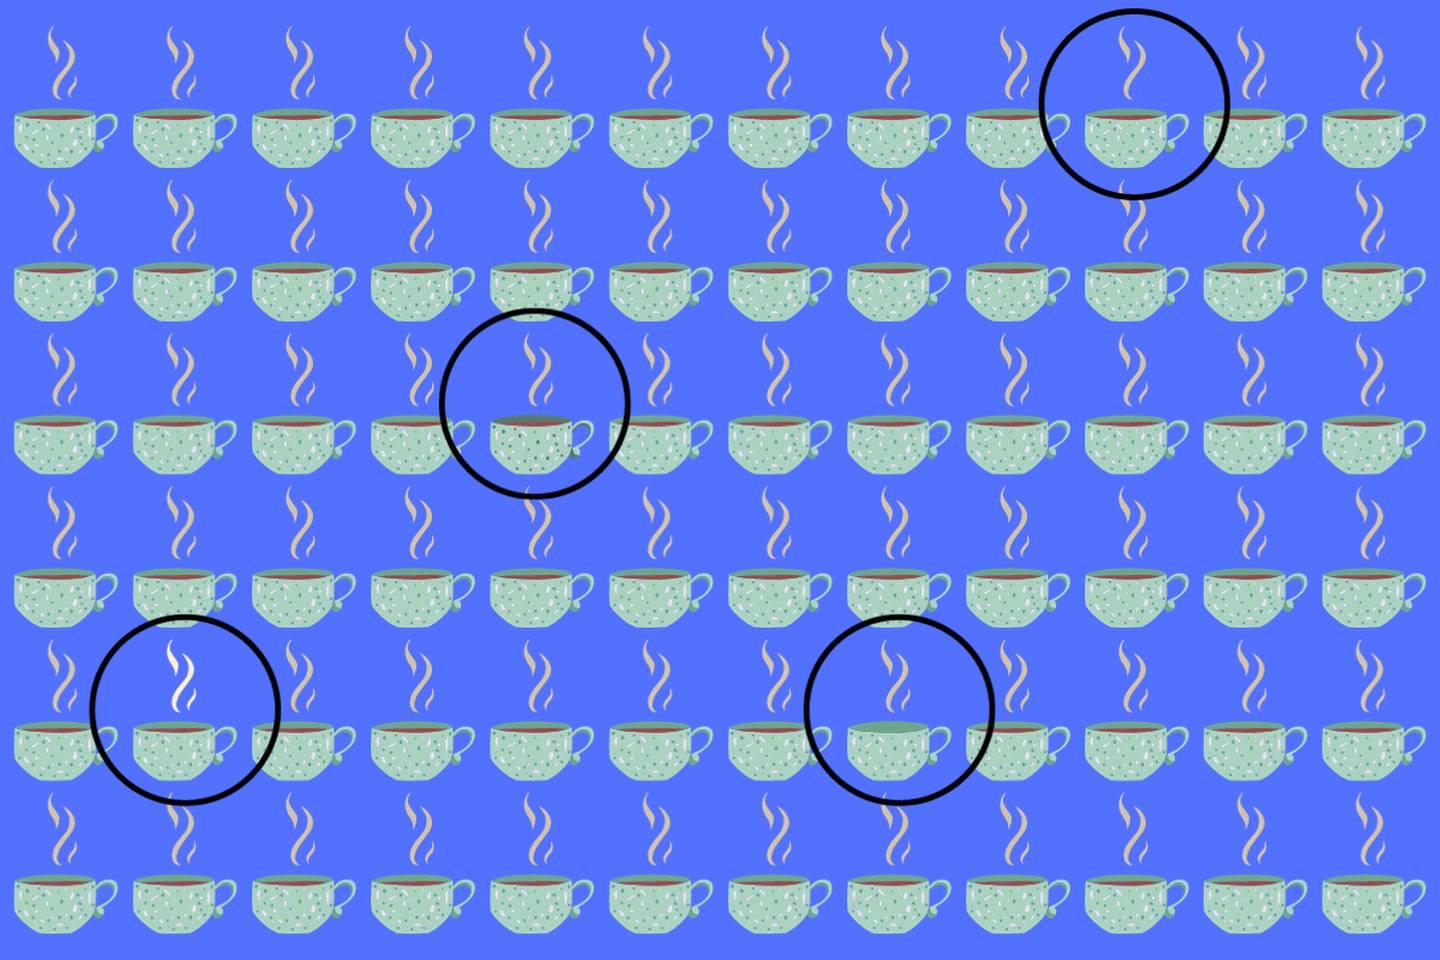 En este test visual hay muchas tazas pero cuatro de ellas son diferentes al resto.